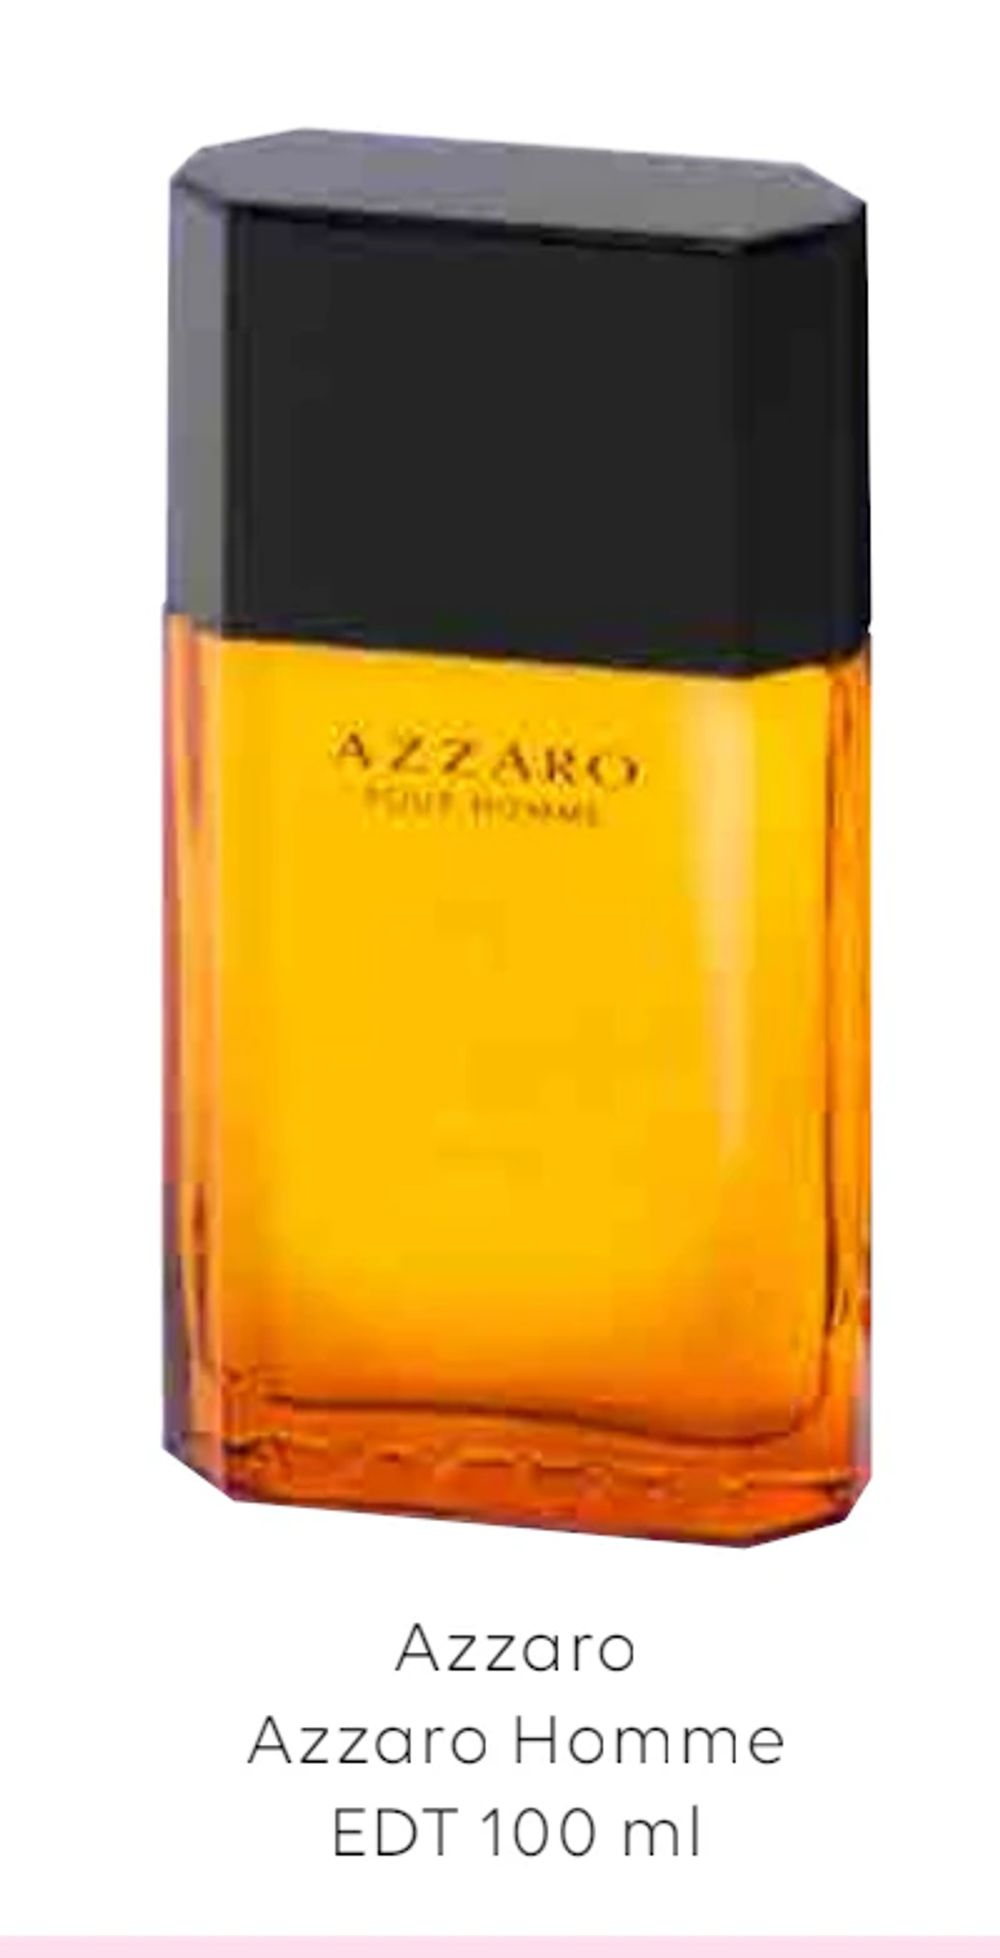 Tilbud på Azzaro Azzaro Homme EDT 100 ml fra Scandlines Travel Shop til 249 kr.